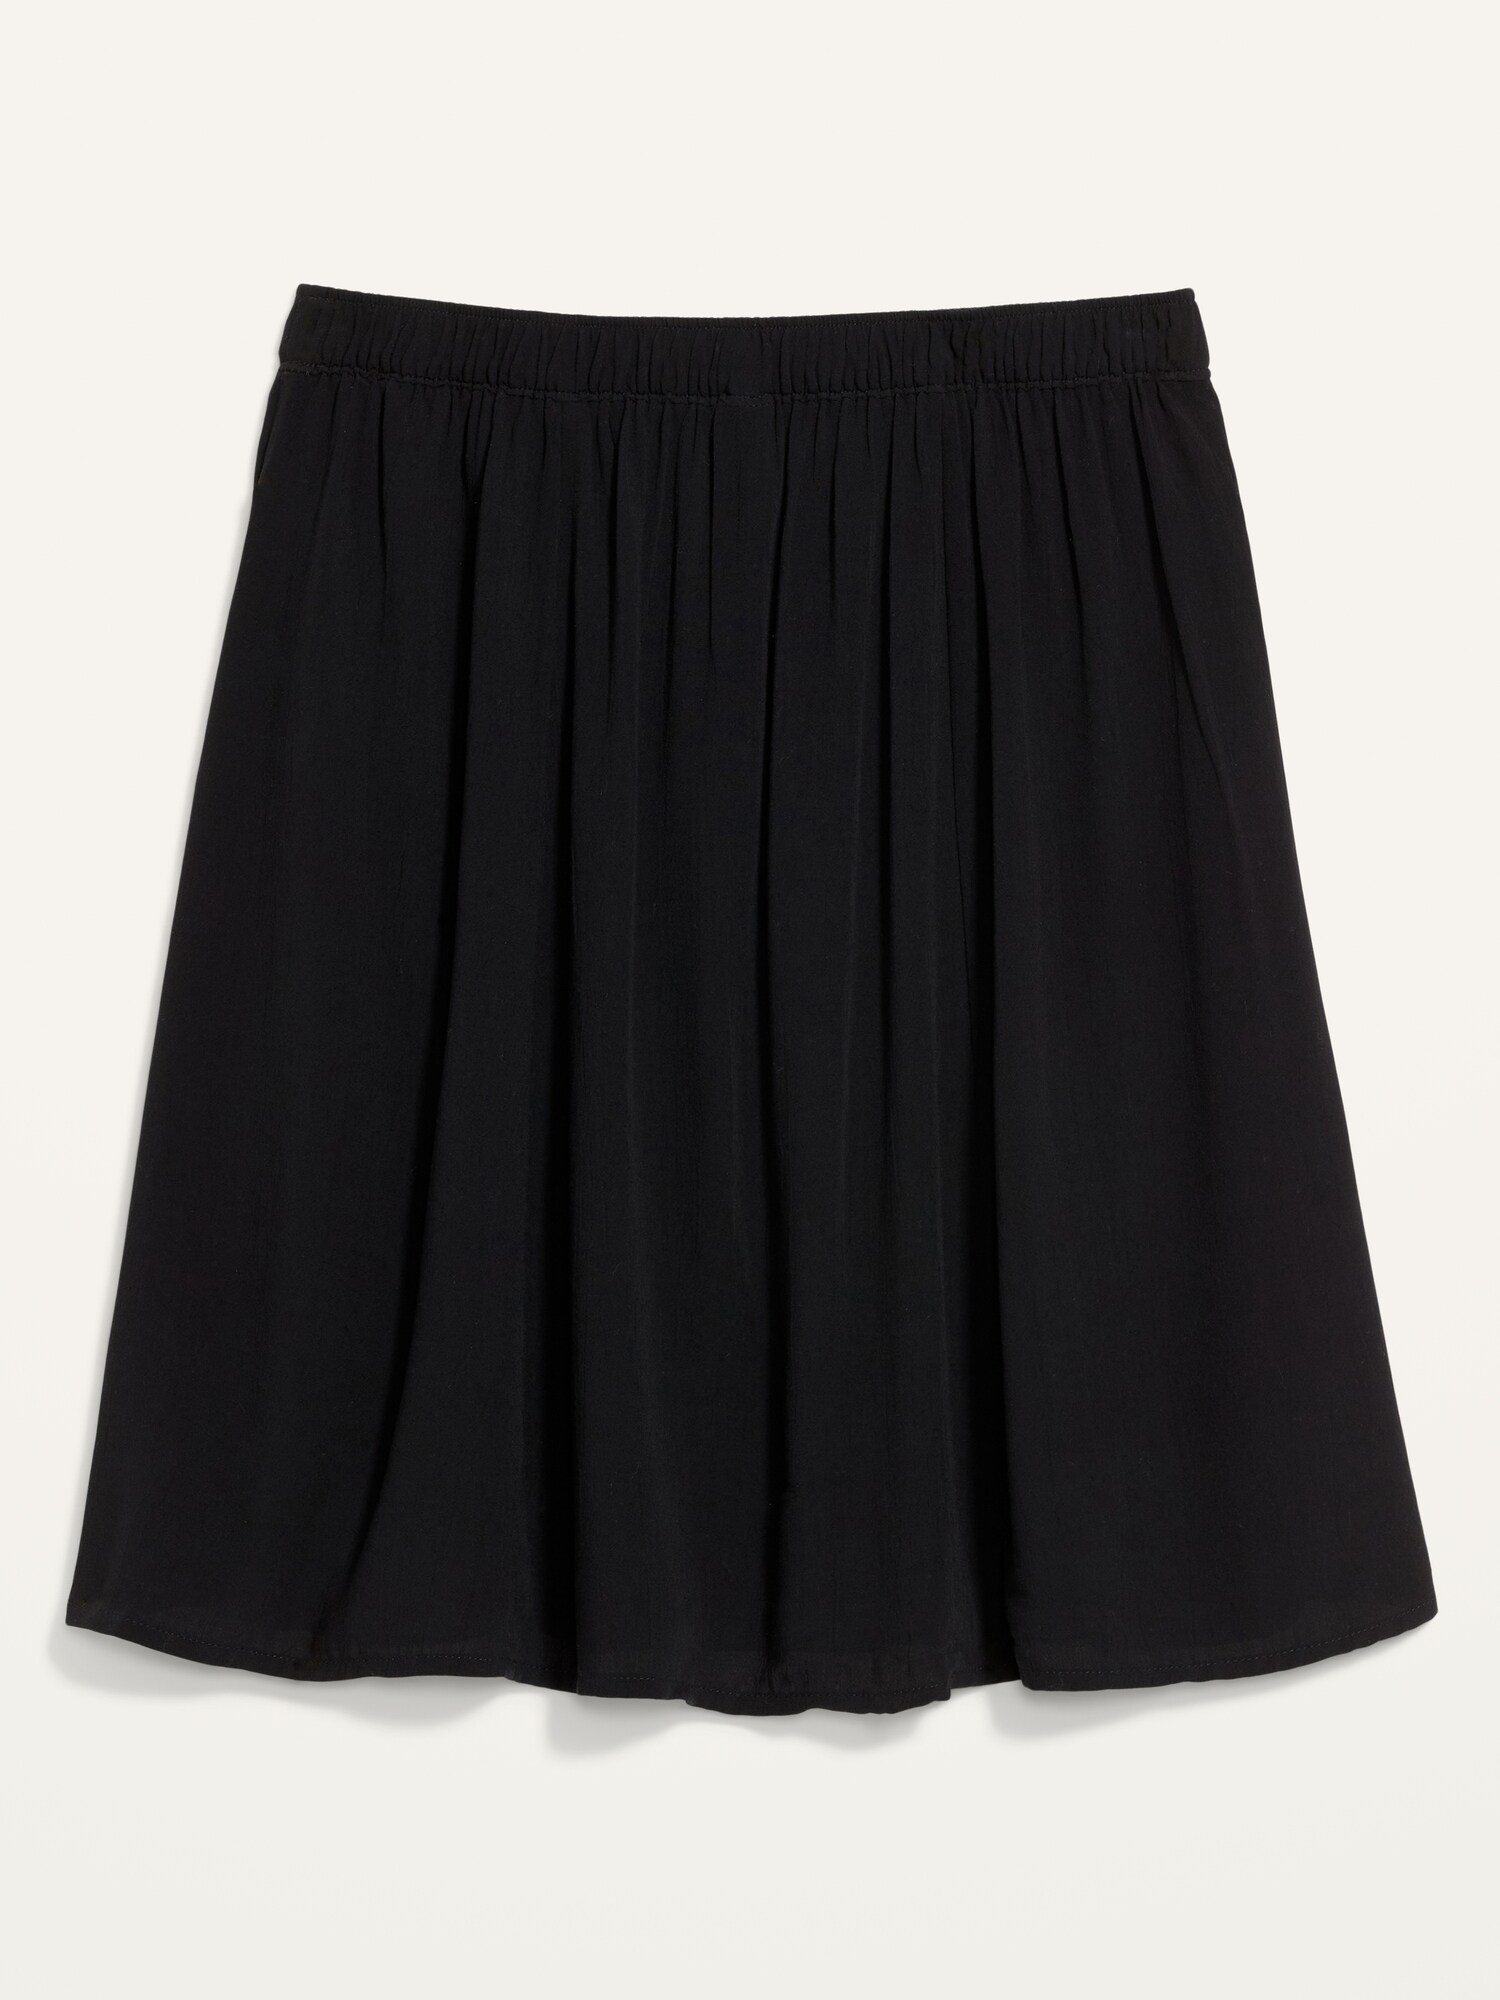 Crinkle-Textured Crepe Skirt for Women 